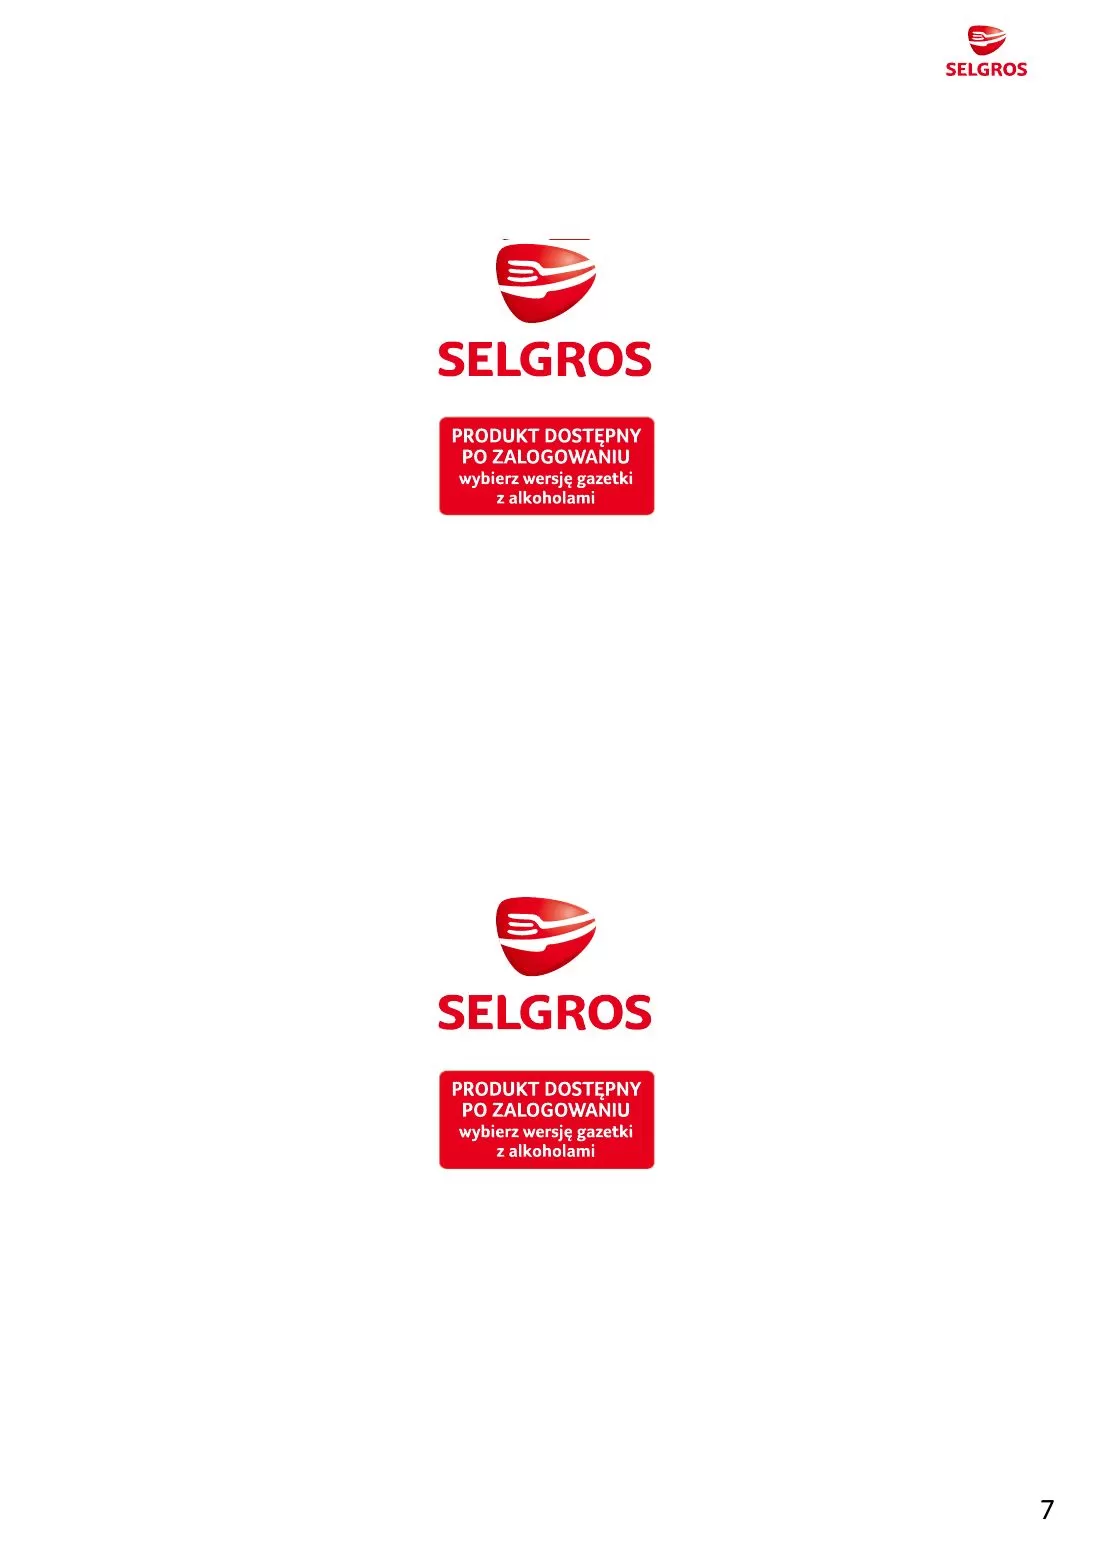 Gazetka promocyjna sklepu Selgros - Katalog ogrodzeń dekoracyjnych - data obowiązywania: od 16.11 do 29.11